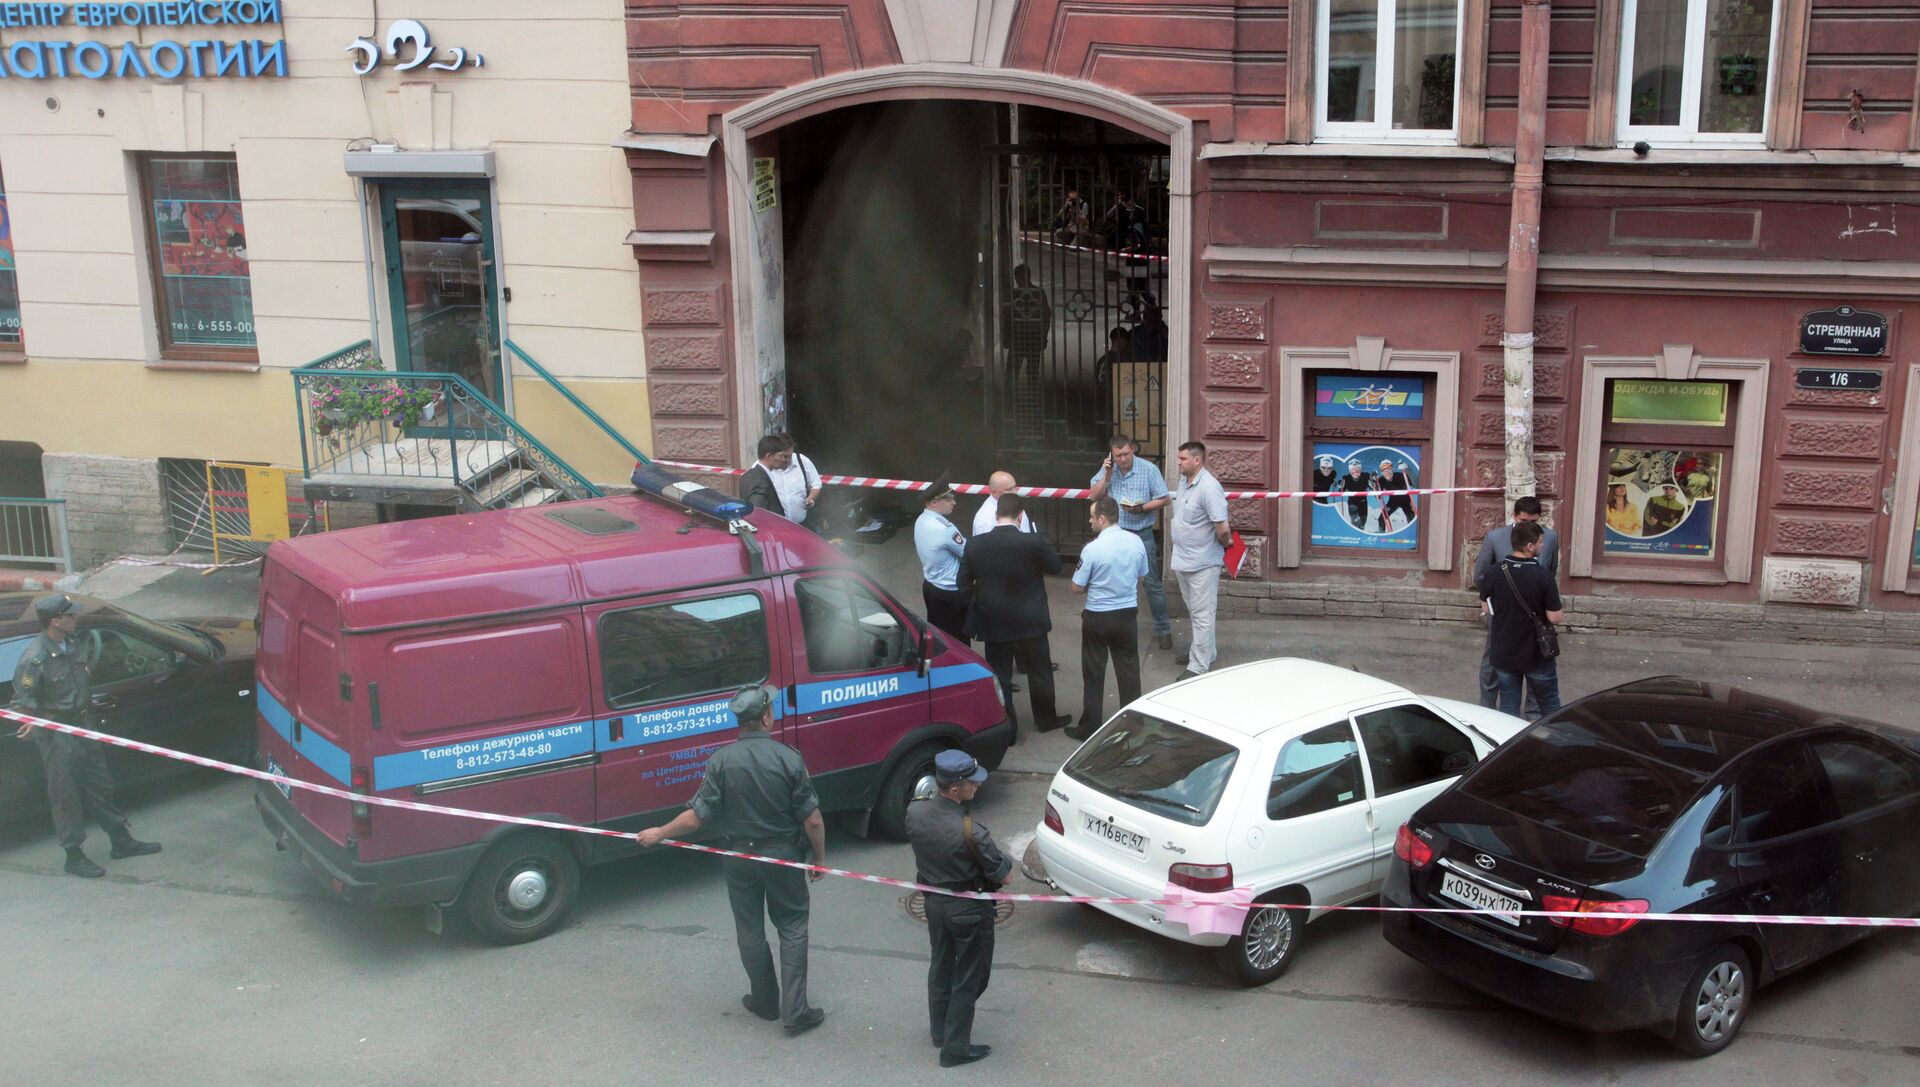 Бомба в питере сегодня. Взрыв в центре Санкт-Петербурга. Взрыв в кафе на Васильевском острове. Взрыв на Васильевском острове сегодня в СПБ. Взрывы в центре Питера сейчас.